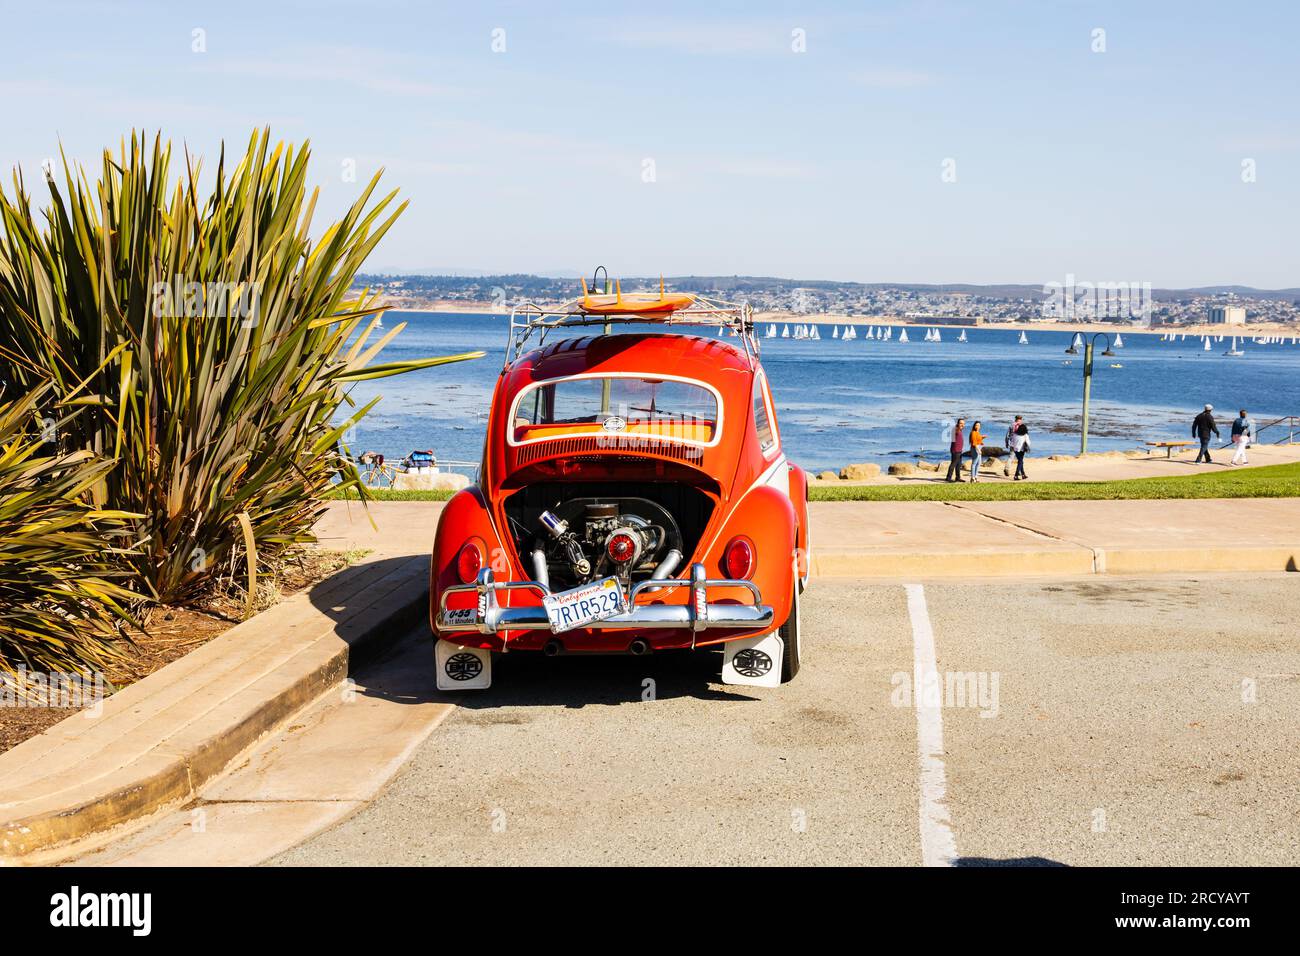 Leuchtend orangefarbener Custom Volkswagen VW Beetle Bug, geparkt am San Carlos Beach, Monterey, Kalifornien, Vereinigte Staaten von Amerika, USA. Stockfoto